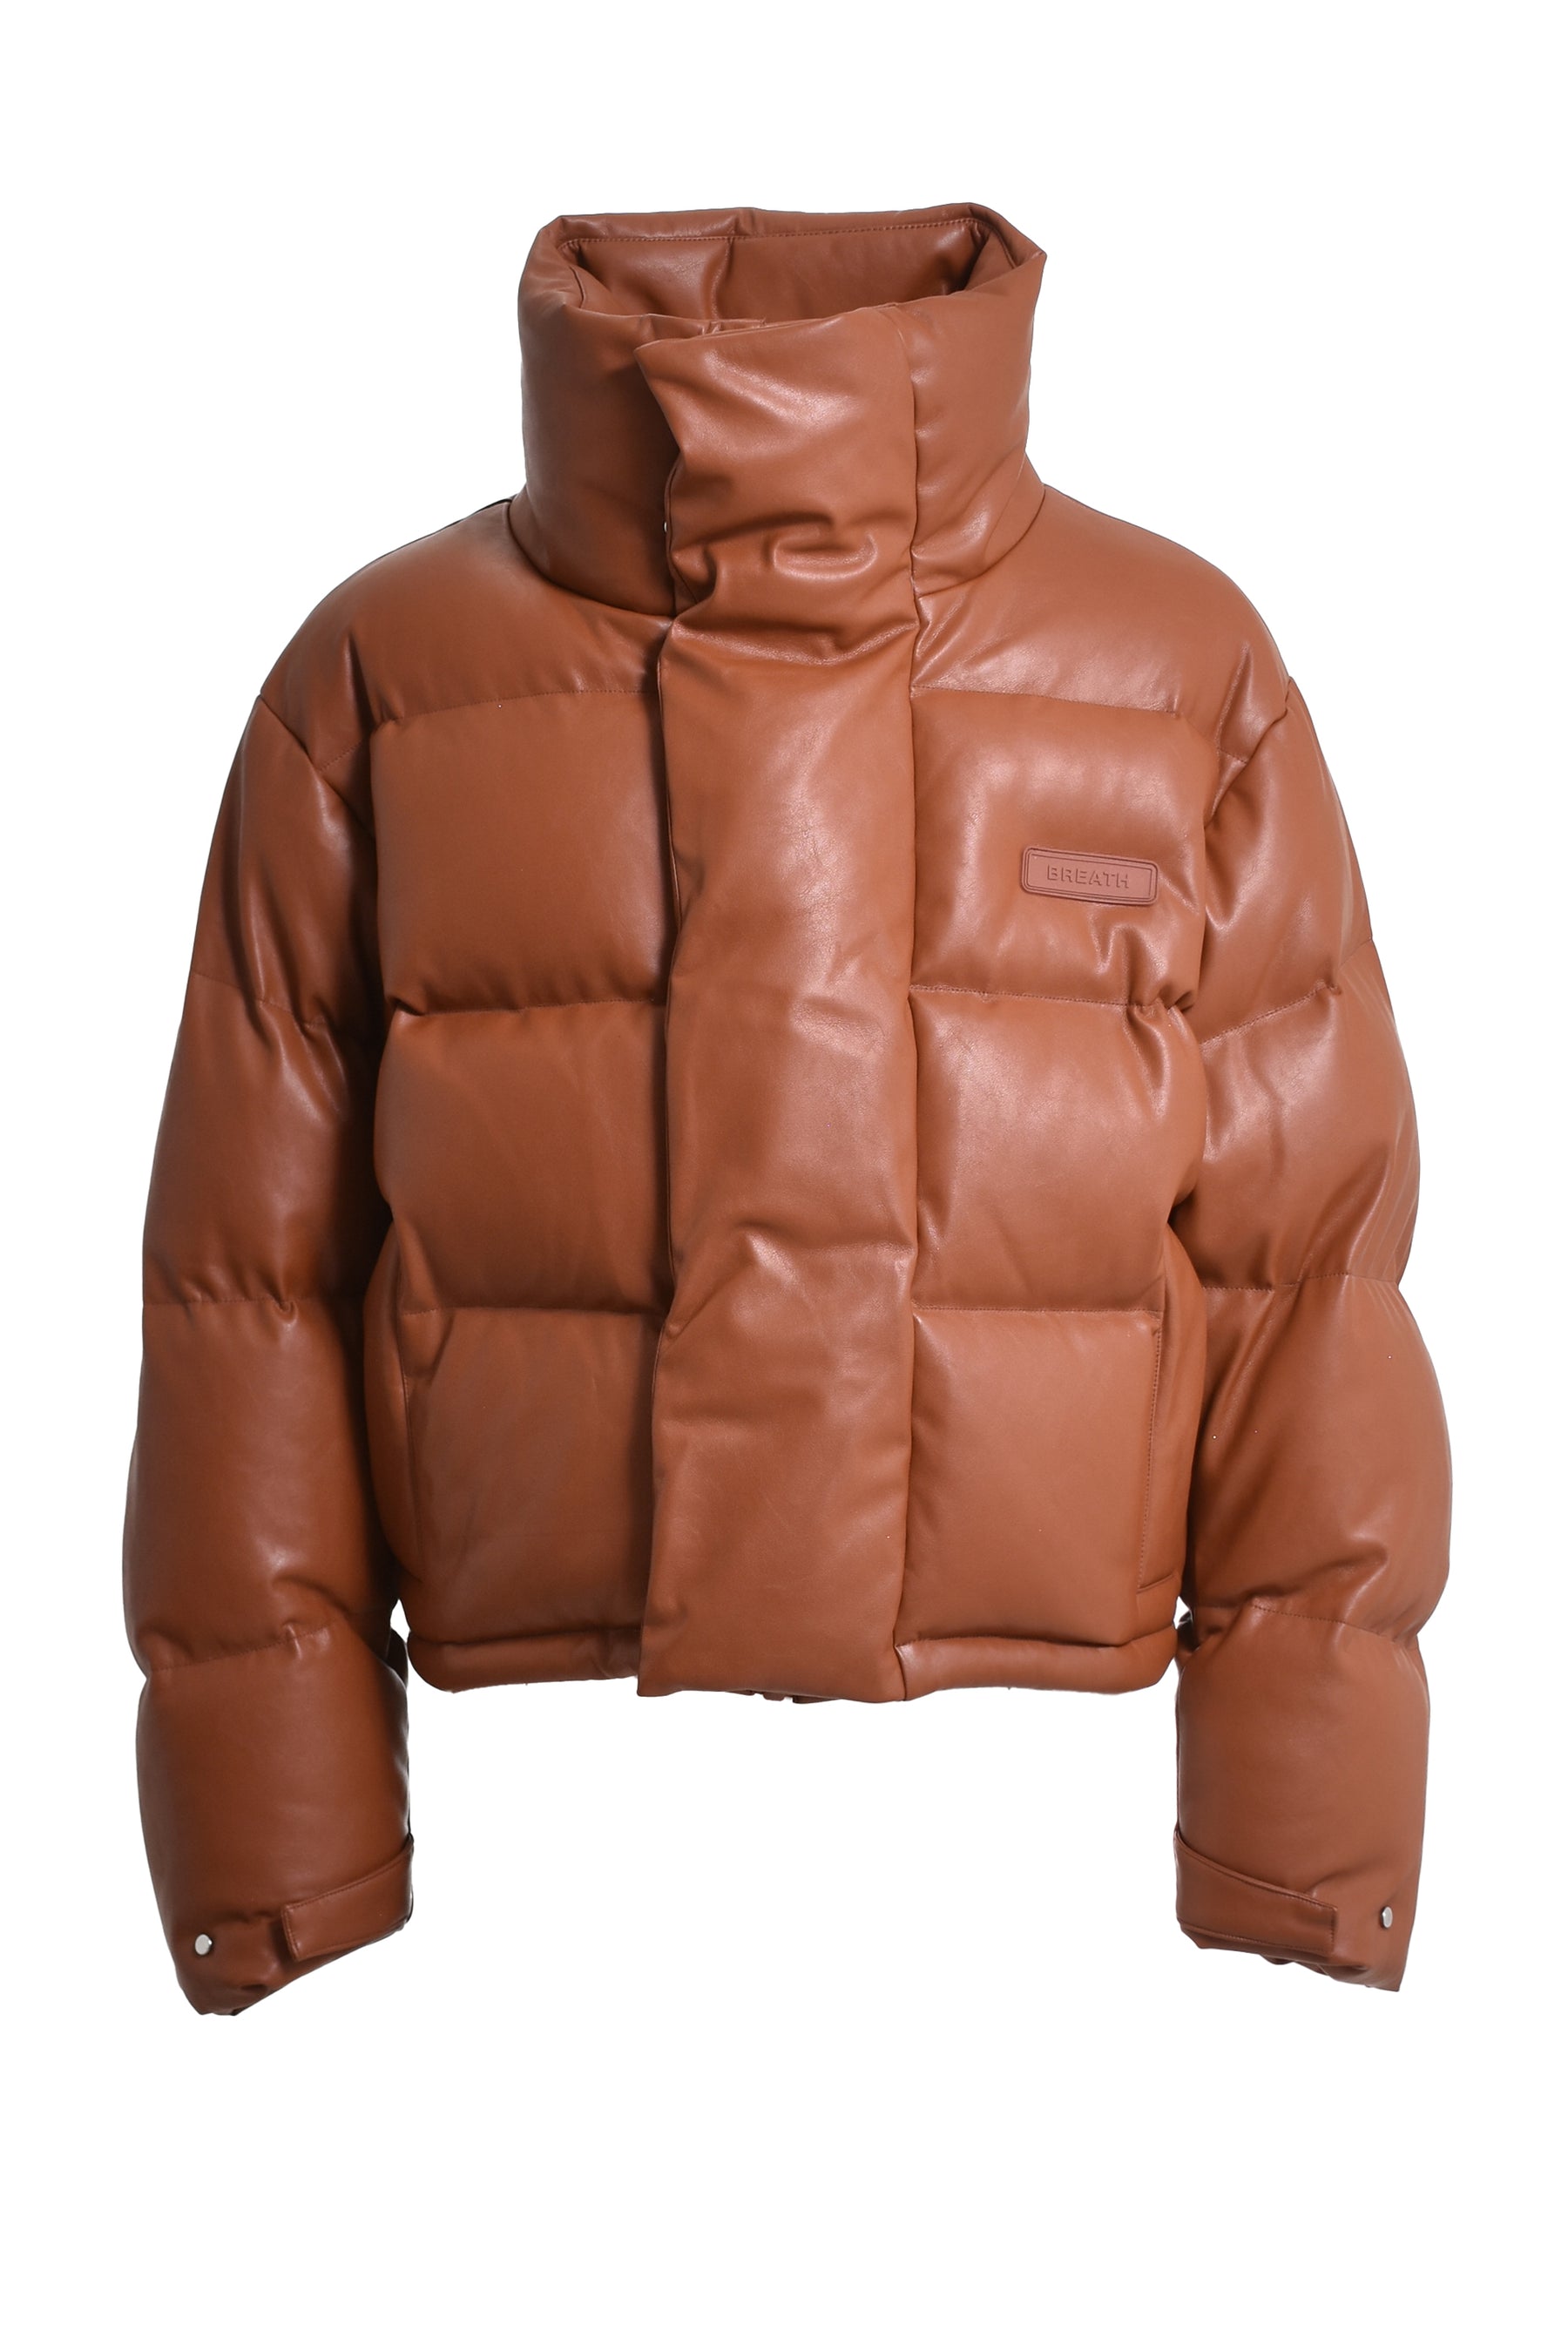 安い最新品leatherBROWN ジャケット レザー ブラウン SW105 札 ライダース